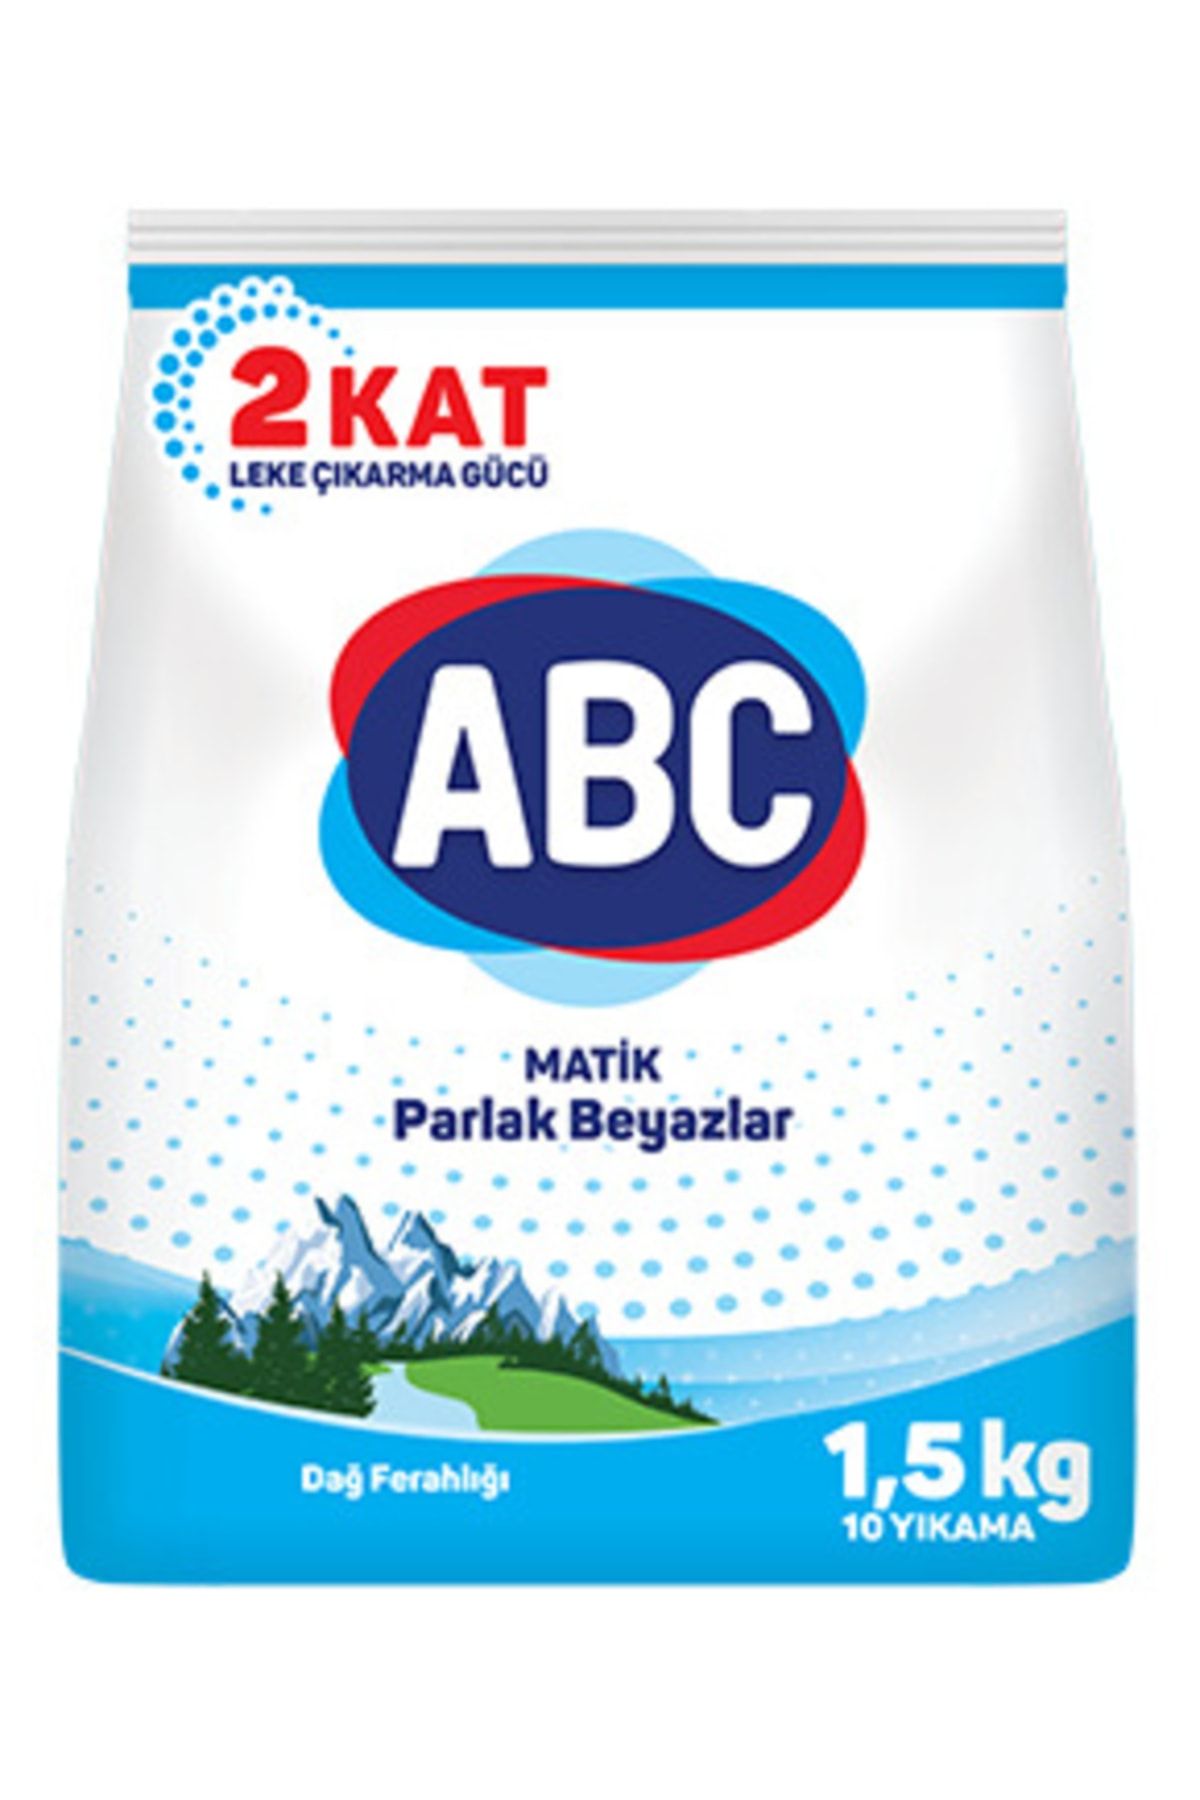 ABC Matik 1.5 kg Parlak Beyazlar Dağ Ferahlığı